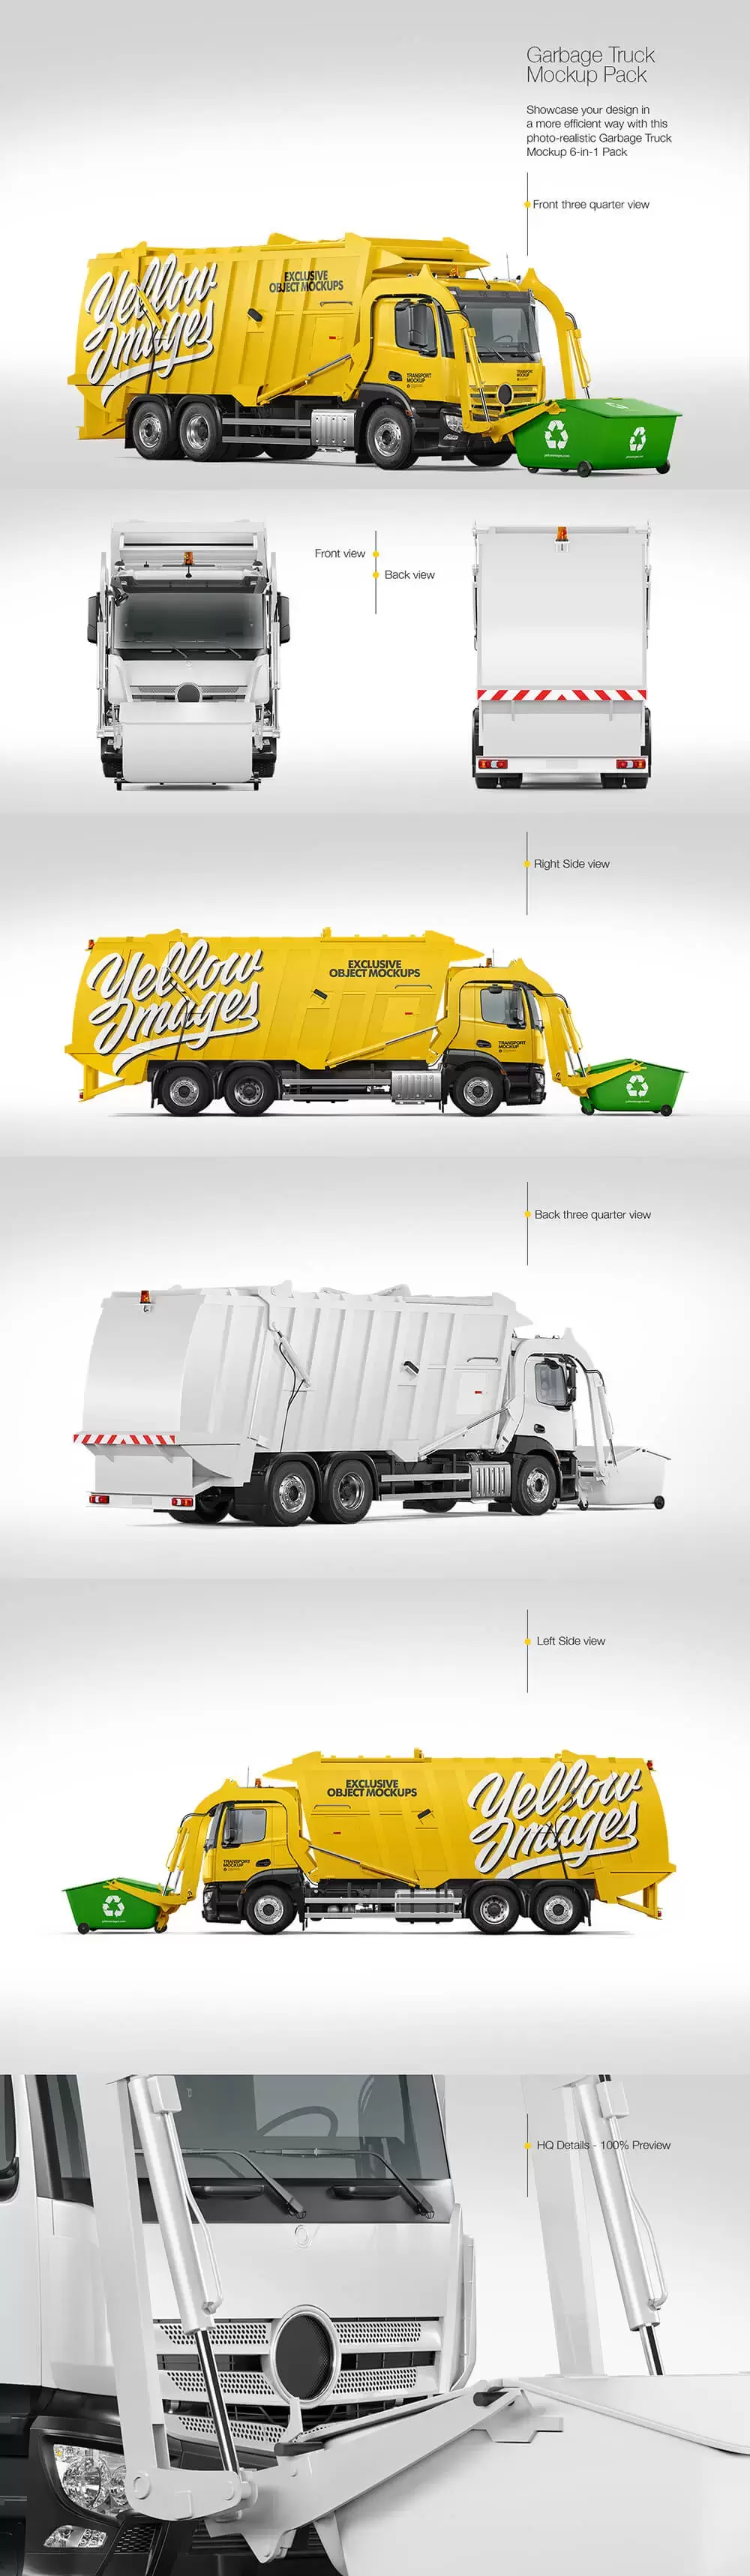 环卫垃圾车外观广告设计样机 (TIF)免费下载插图